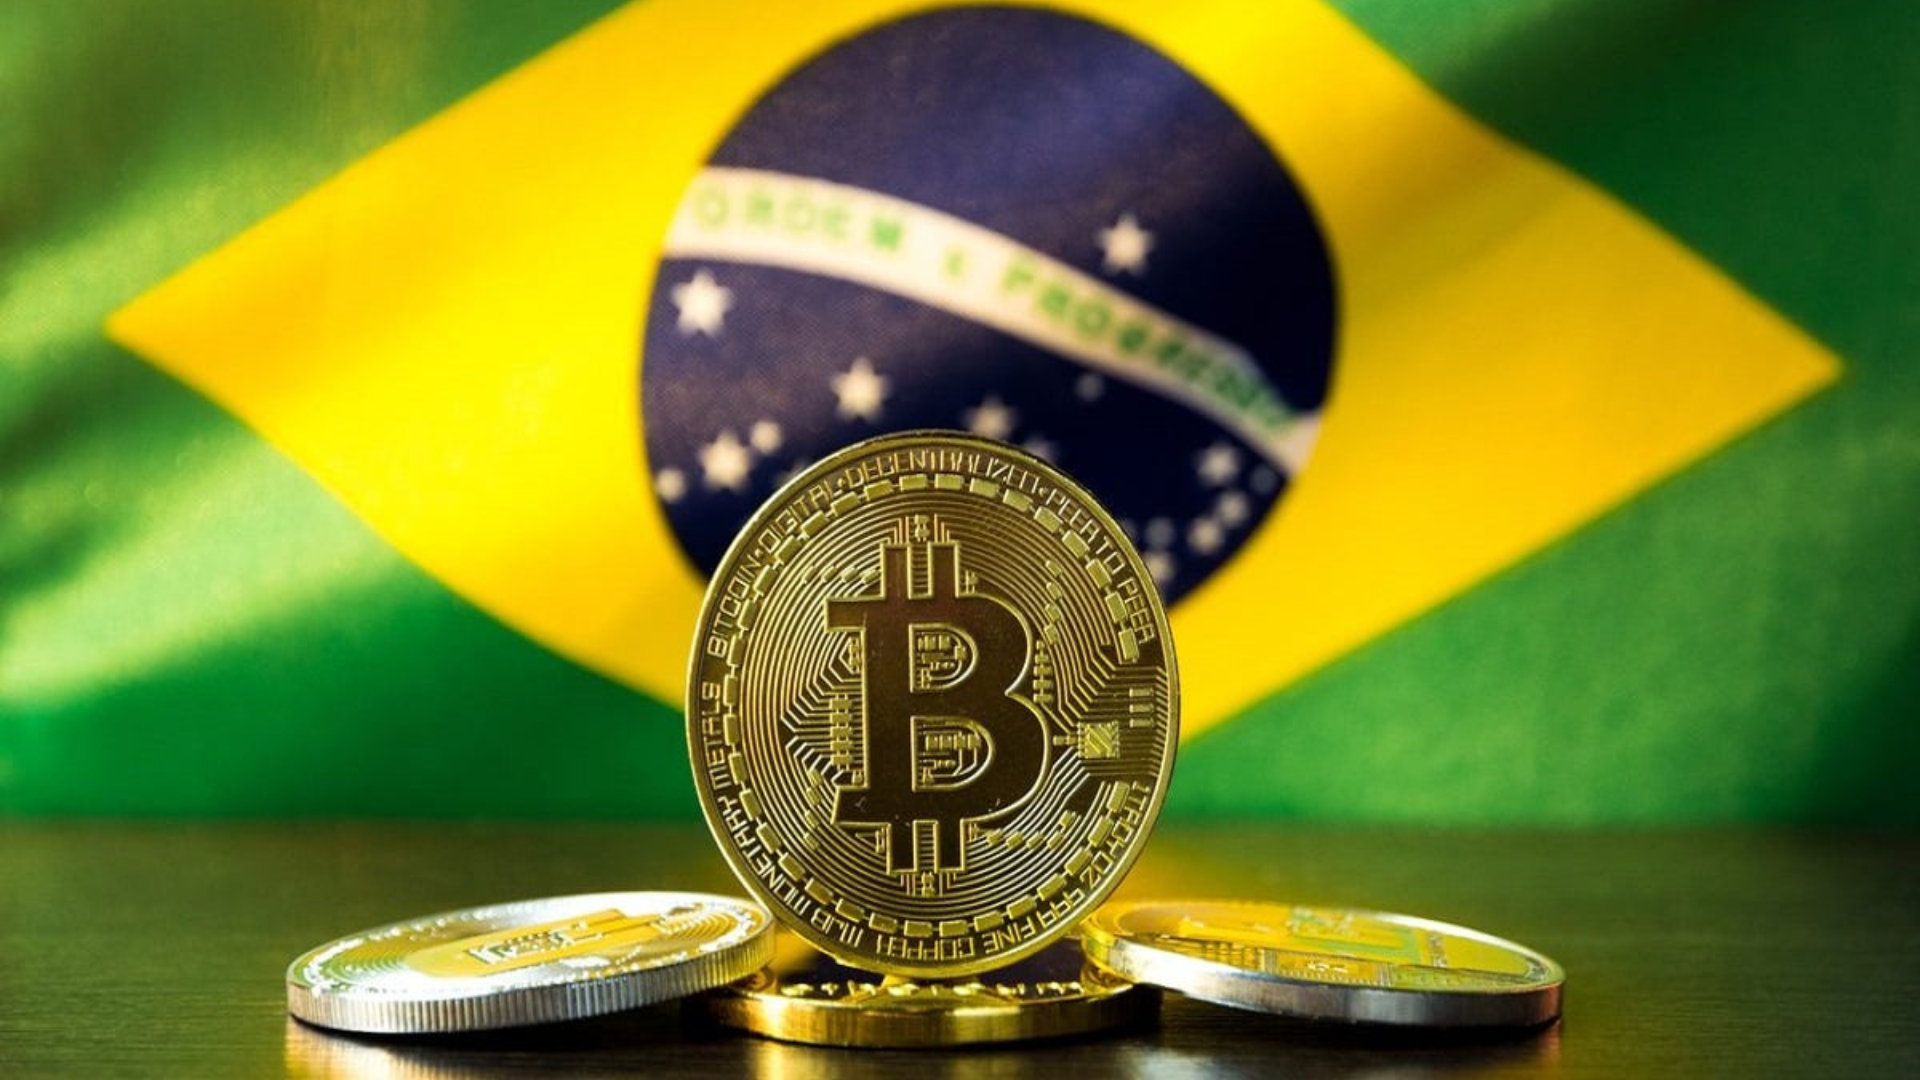 Brasil keluarkan aturan legalkan kripto sebagai metode pembayaran. Foto: Shutterstock.